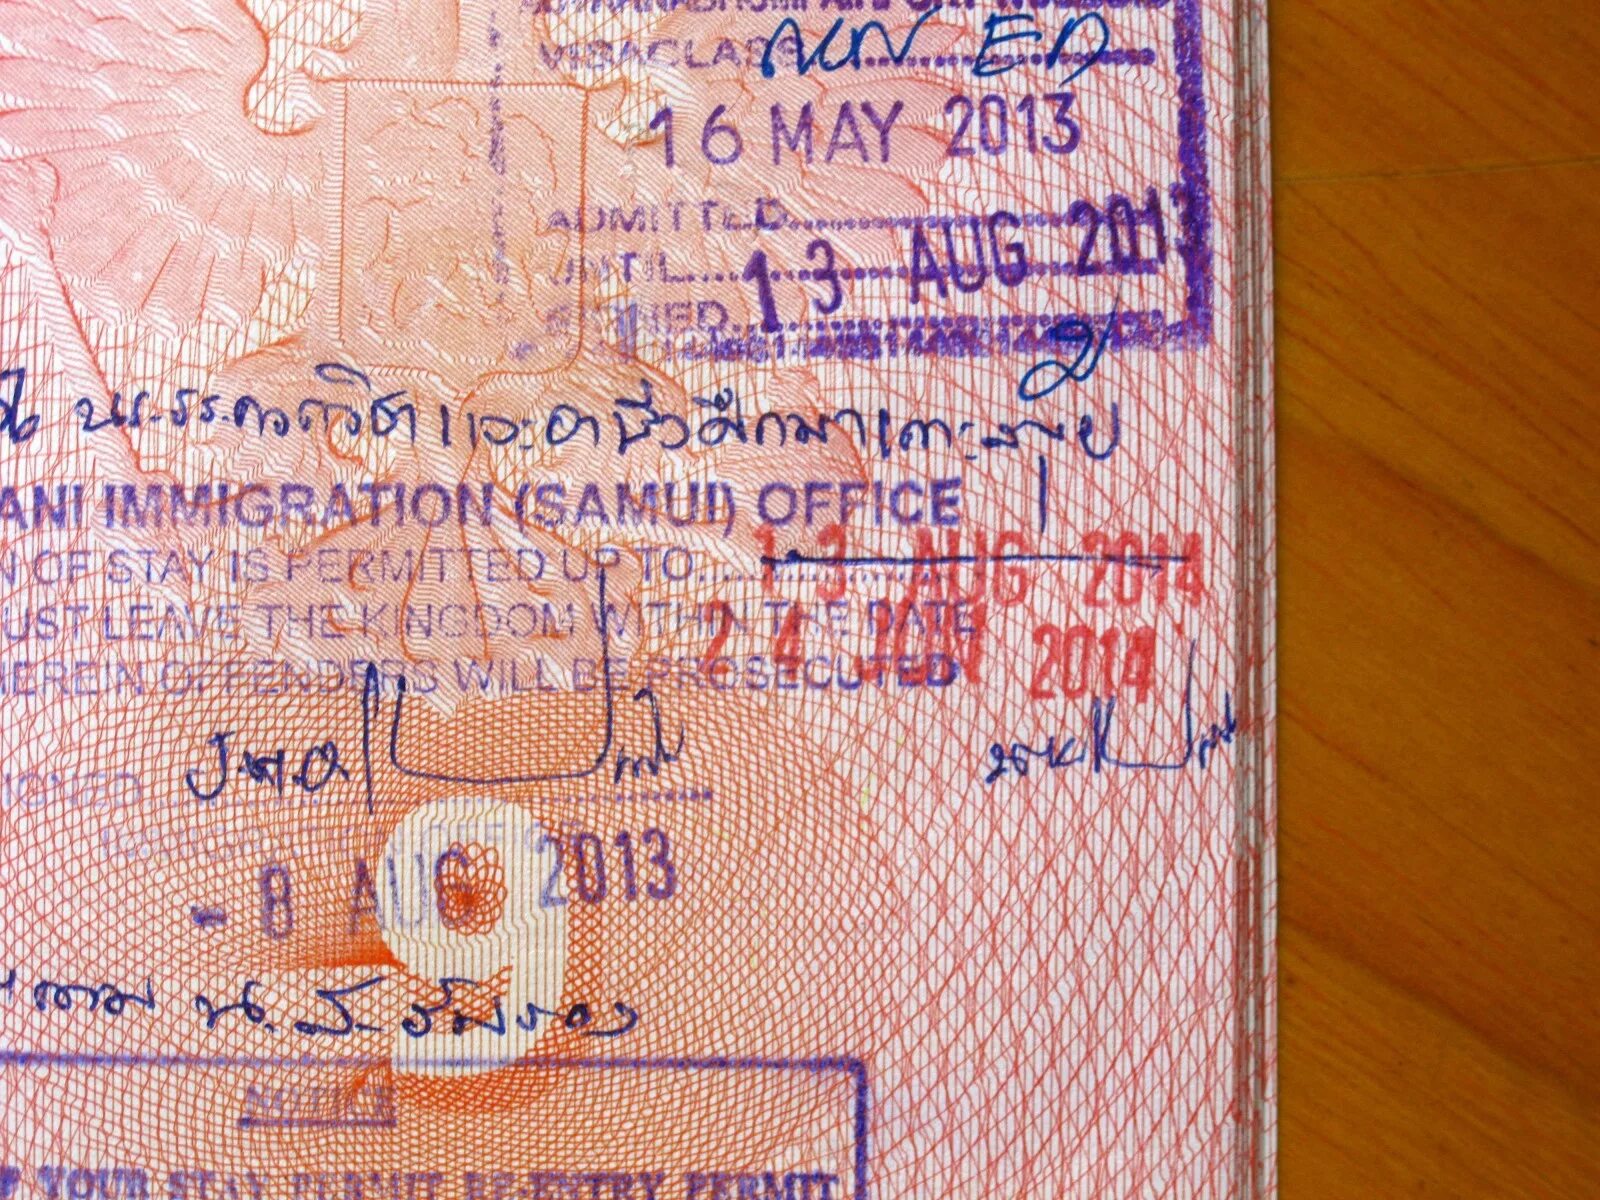 Продлевают ли визу. Виза в Тайланд. Продление визы Тайланд. Печать о продлении визы. Виза печать Тайланда.